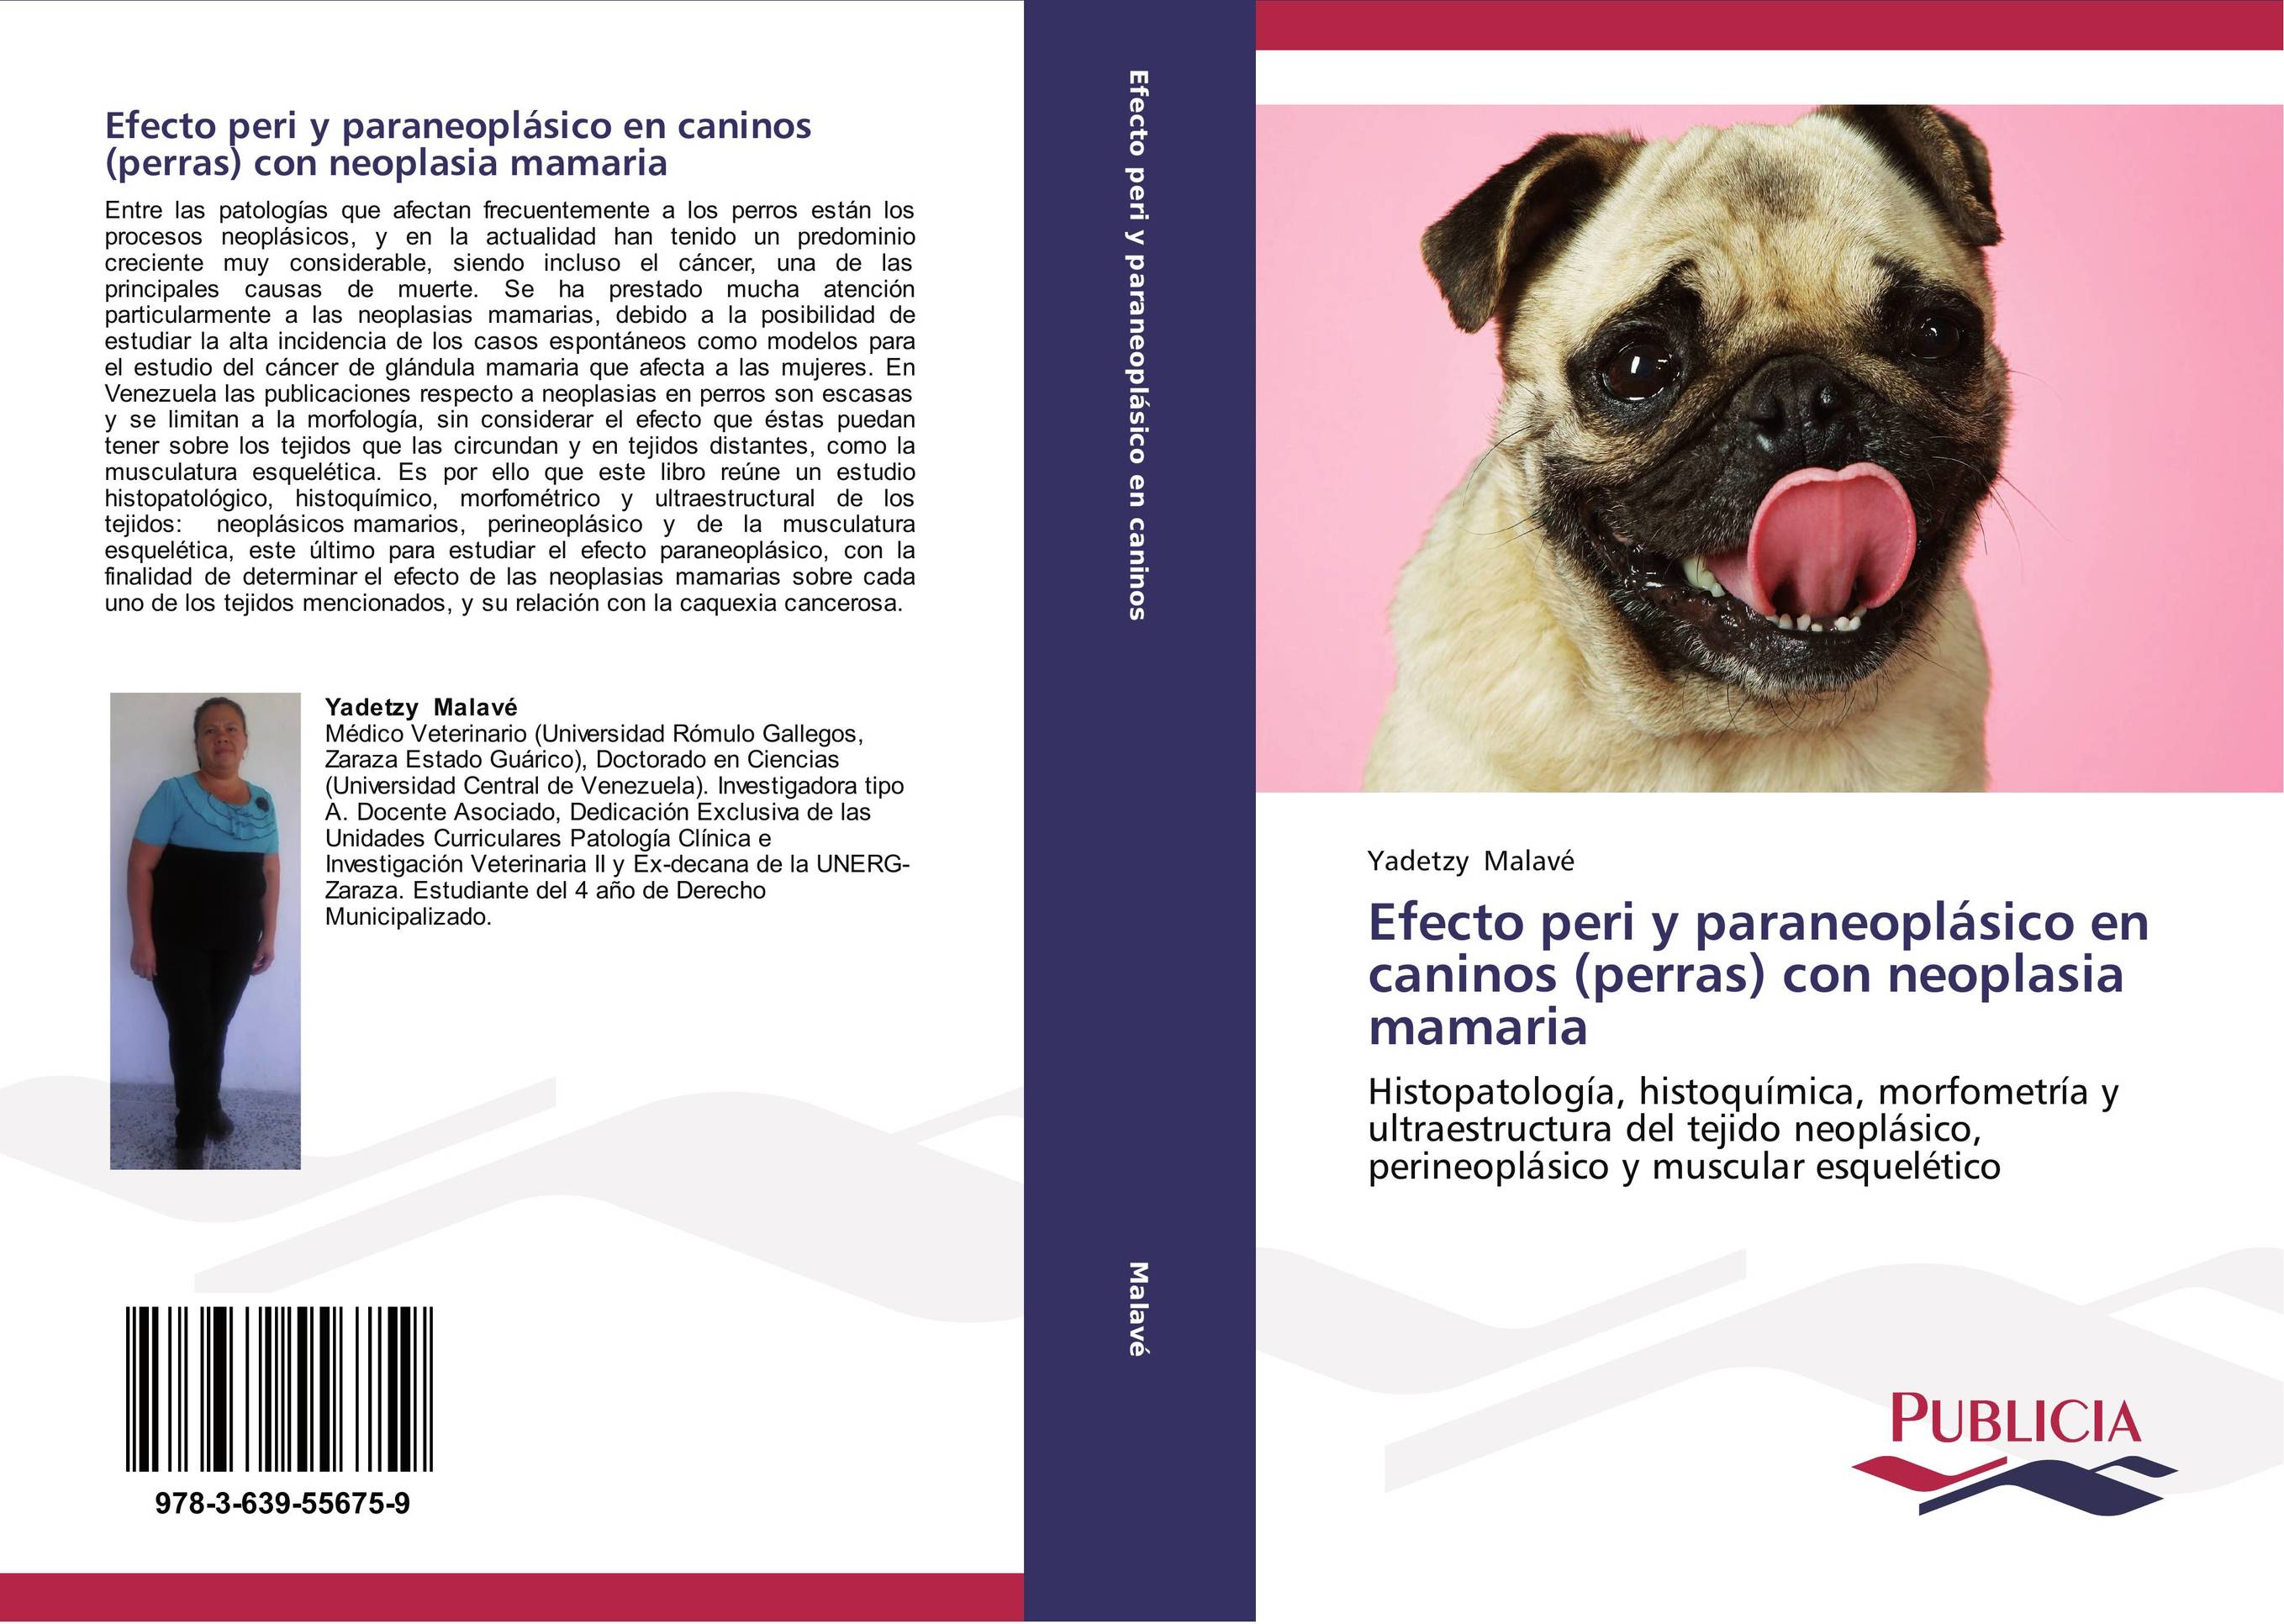 Efecto peri y paraneoplásico en caninos (perras) con neoplasia mamaria